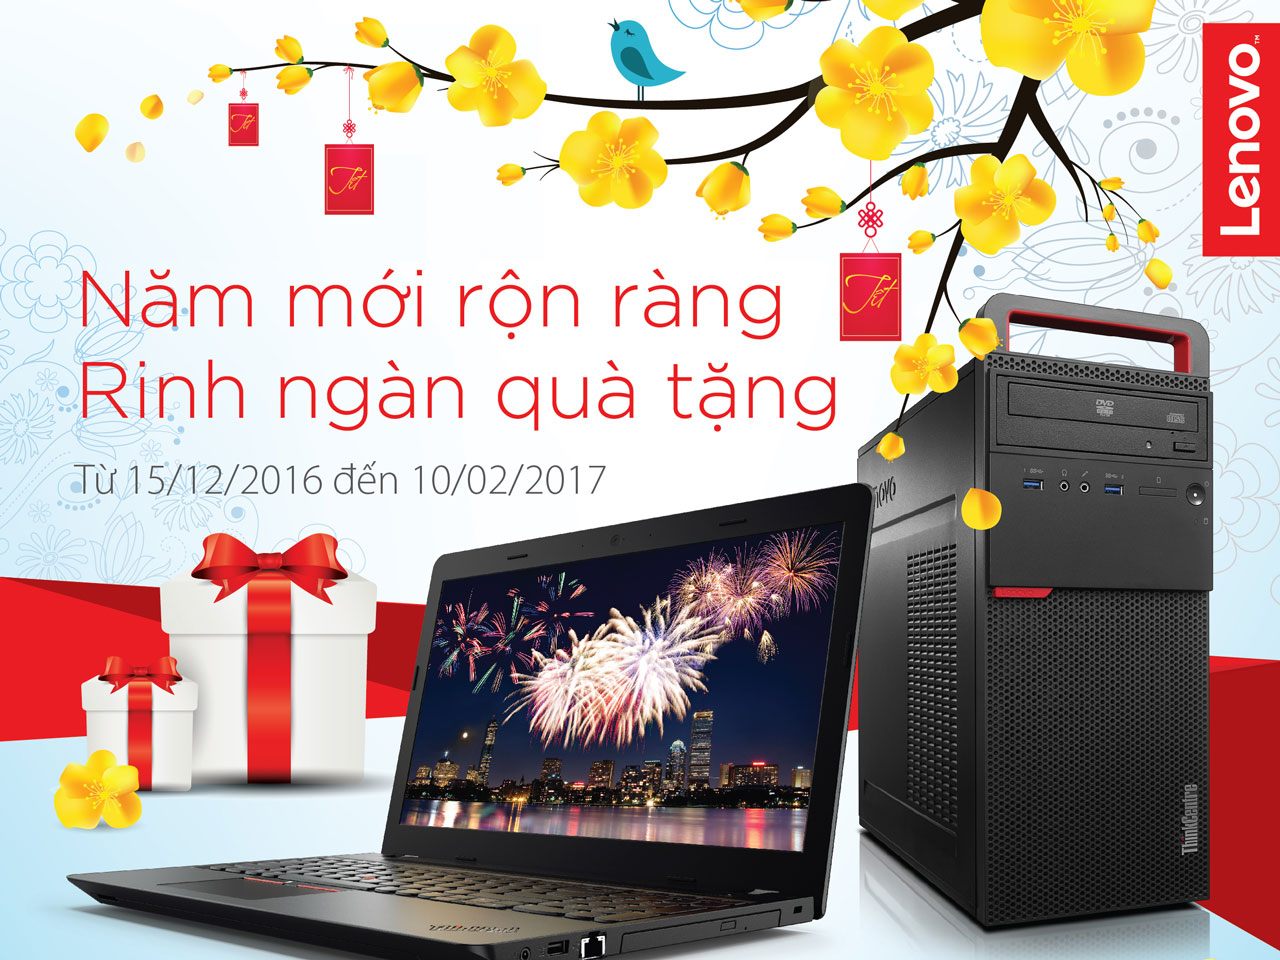 Khuyến mãi tưng bừng khi mua máy tính Lenovo dịp năm mới